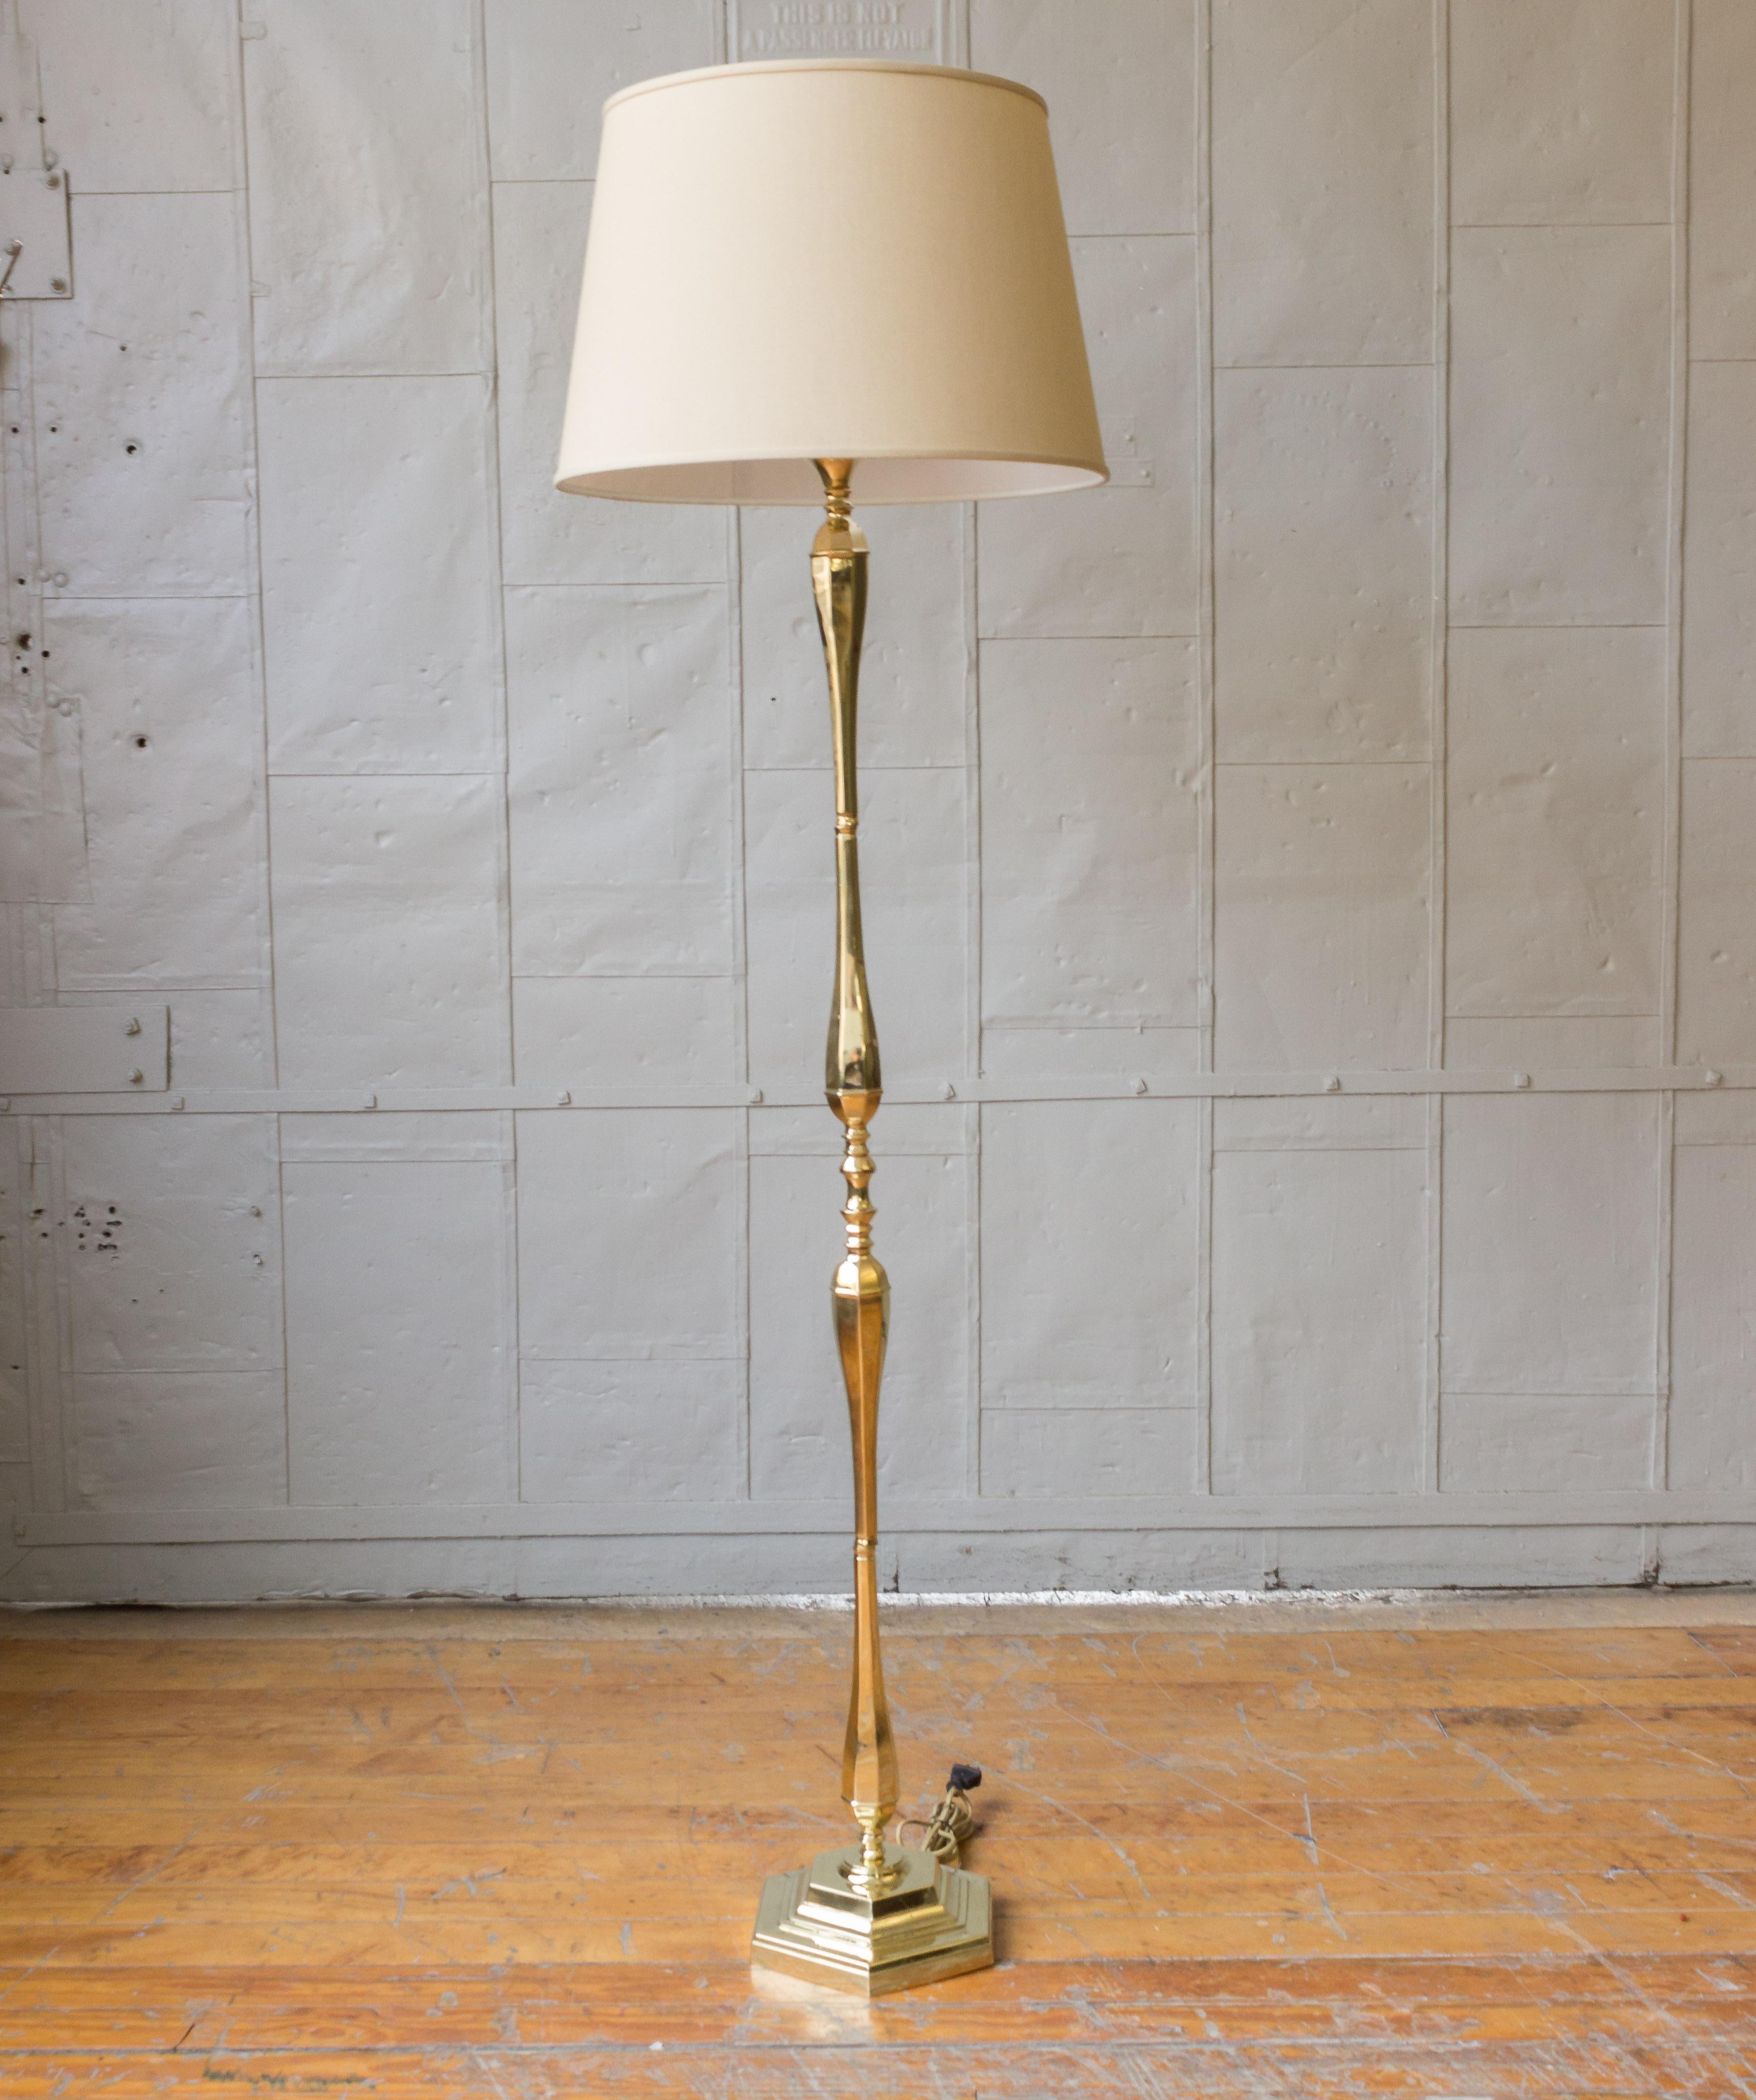 Stehlampe im neoklassischen Stil aus Frankreich, bestehend aus gedrechselten Einzelteilen auf einem sechseckigen Sockel. Diese Stehlampe wurde kürzlich mit einer polierten Messingoberfläche überzogen und neu verkabelt. Nicht UL-verdrahtet. Die Lampe